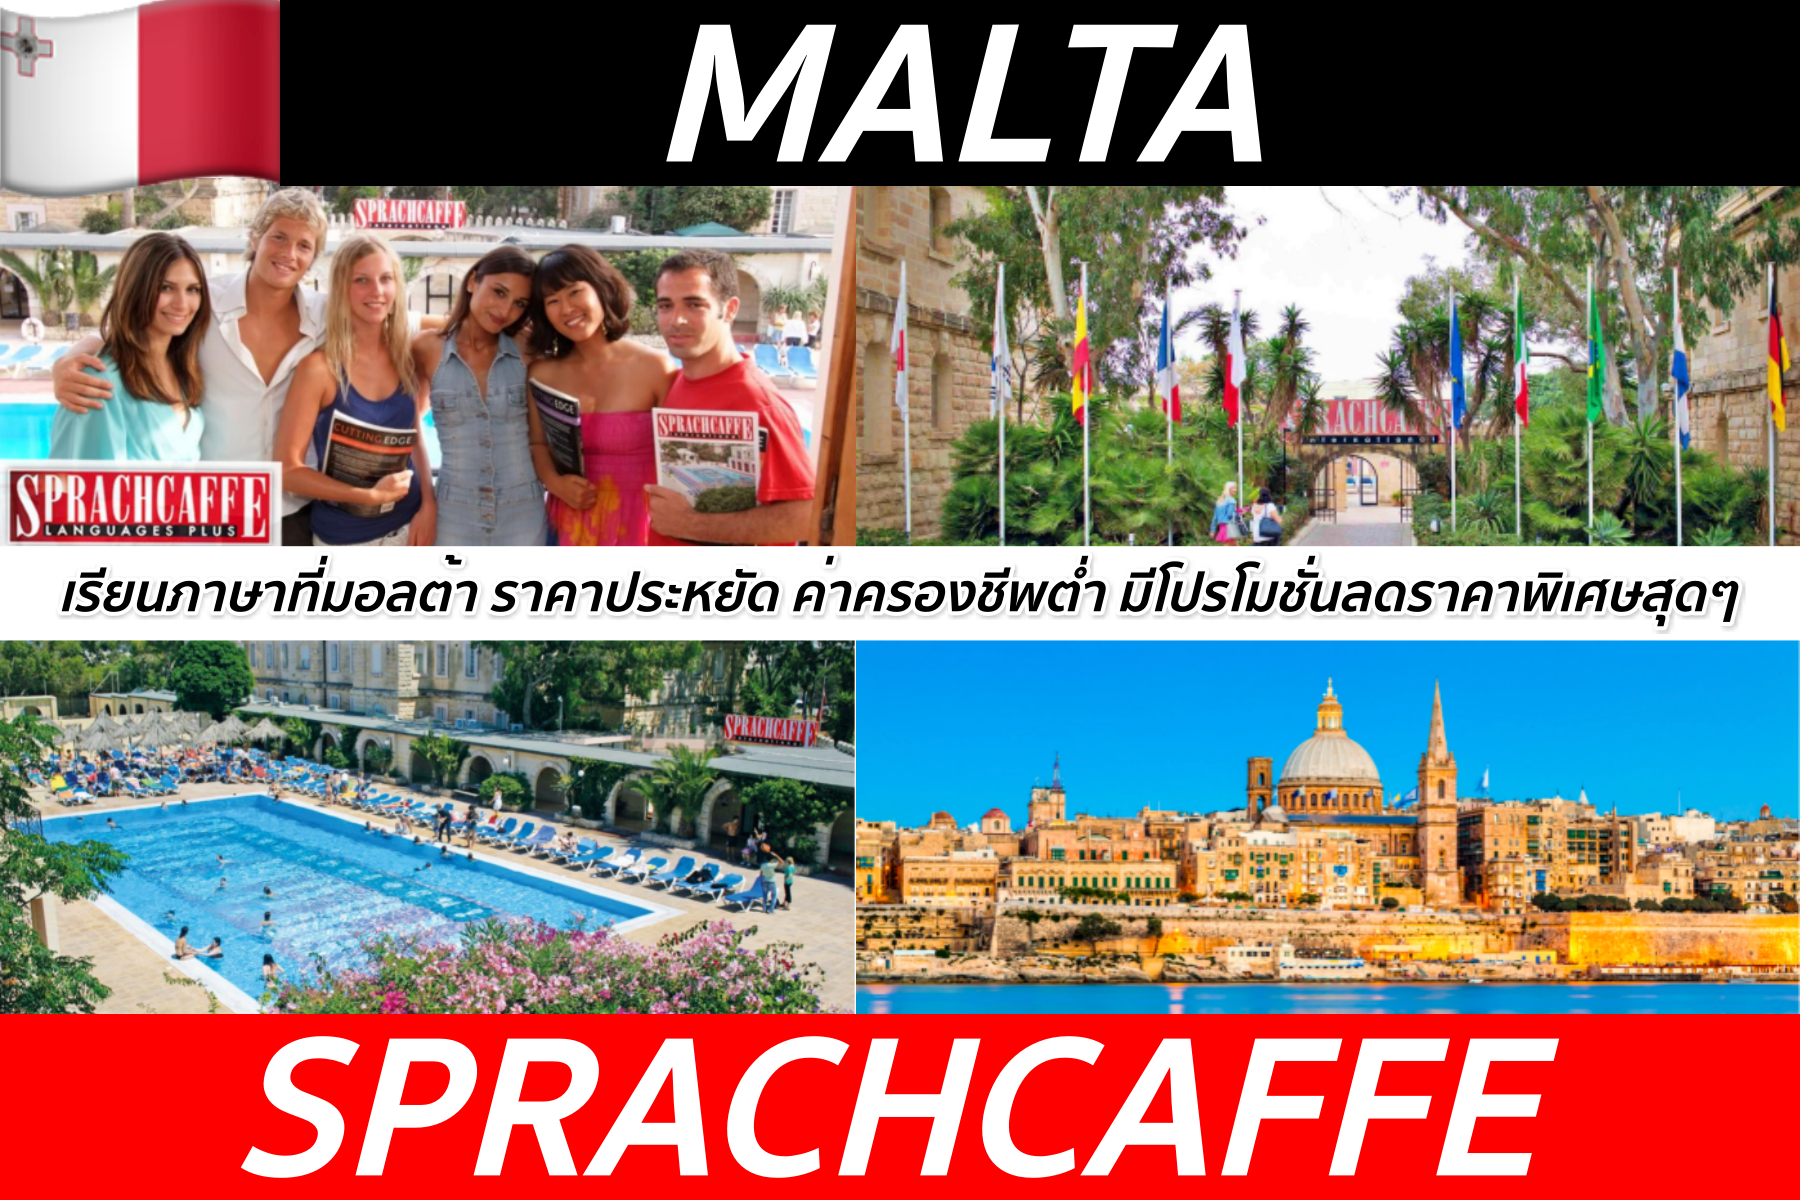 คอร์สภาษาอังกฤษที่สถาบัน Sprachcaffe, Malta ค่าครองชีพต่ำ ราคาไม่แพง มีโปรโมชั่นคุ้ม!